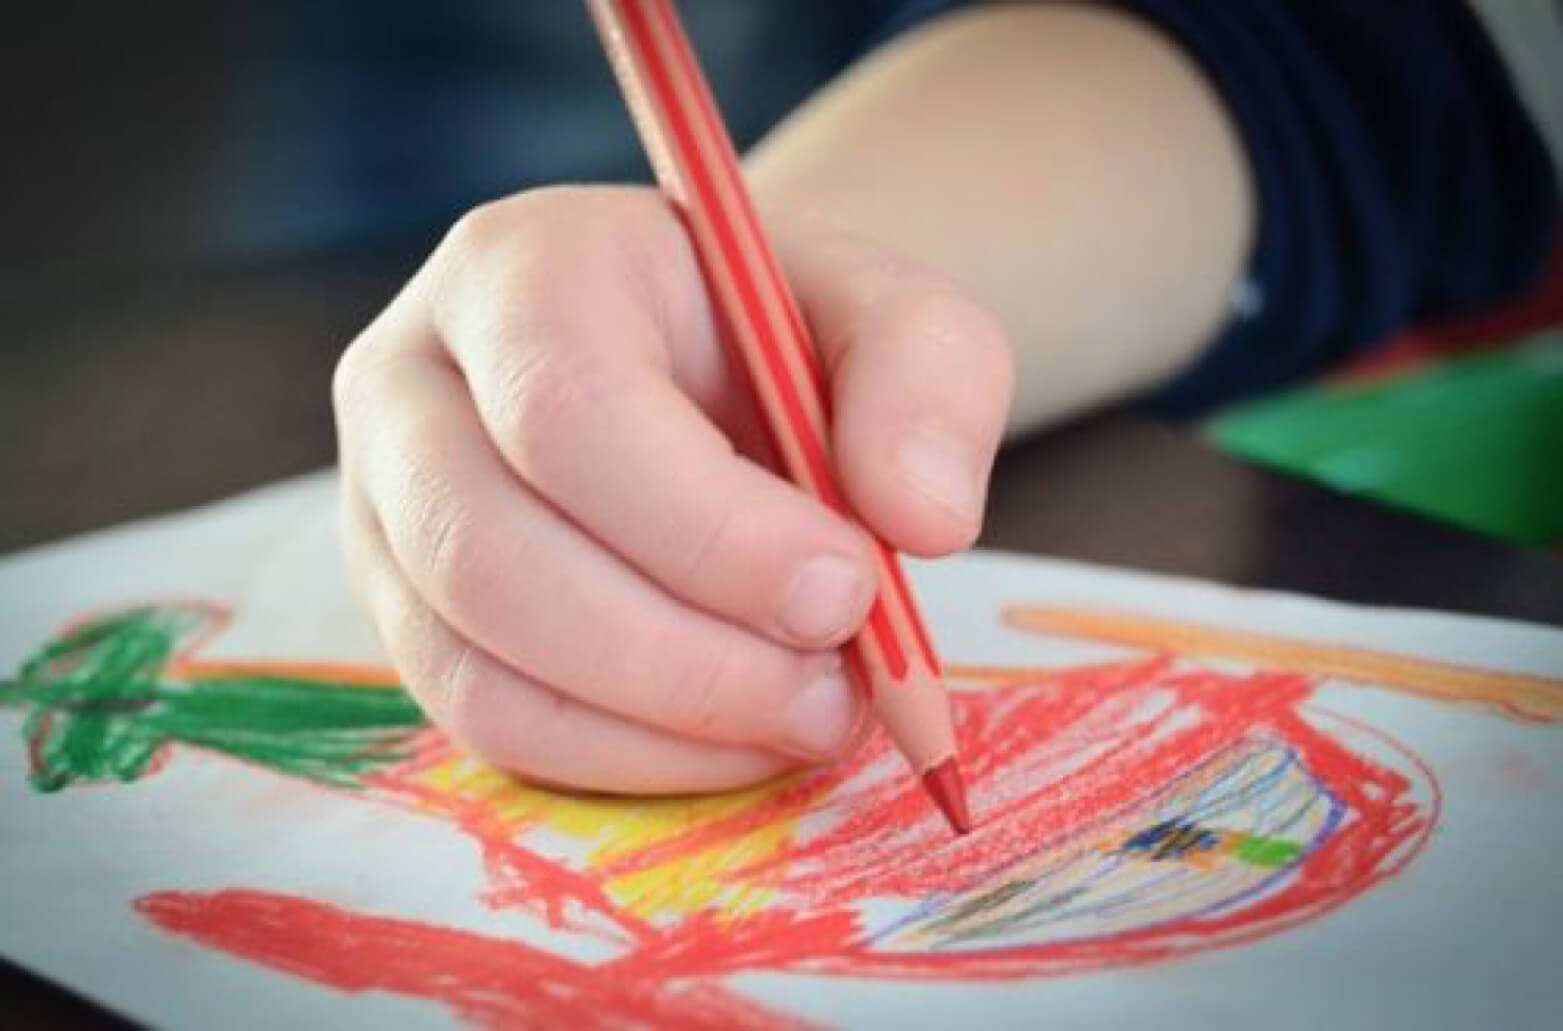 Top 6 lớp dạy vẽ cho trẻ em ở TPHCM uy tín nhất